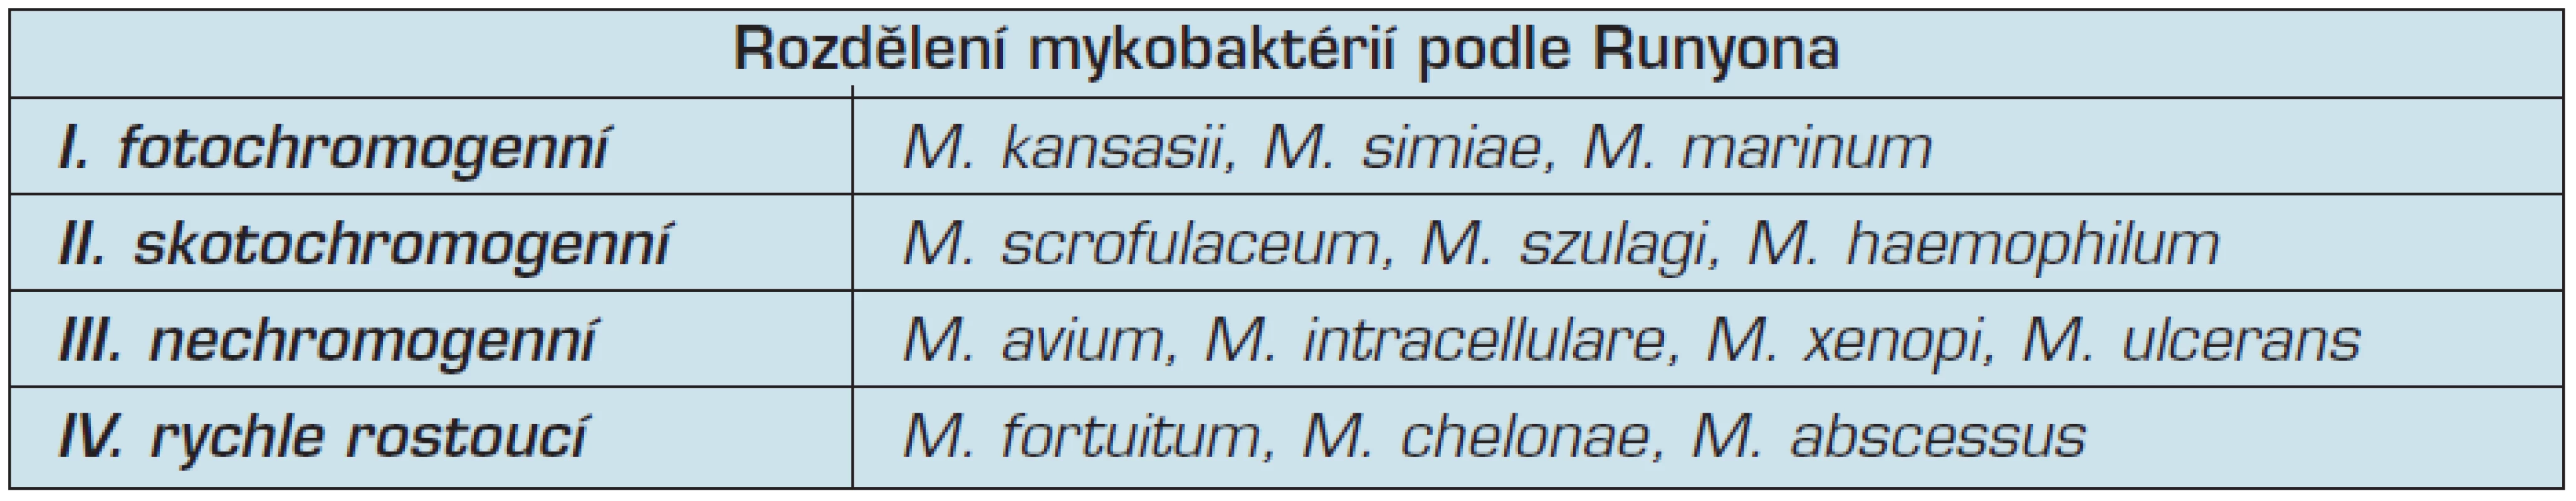 Klasifikace mykobakterií dle Runyona